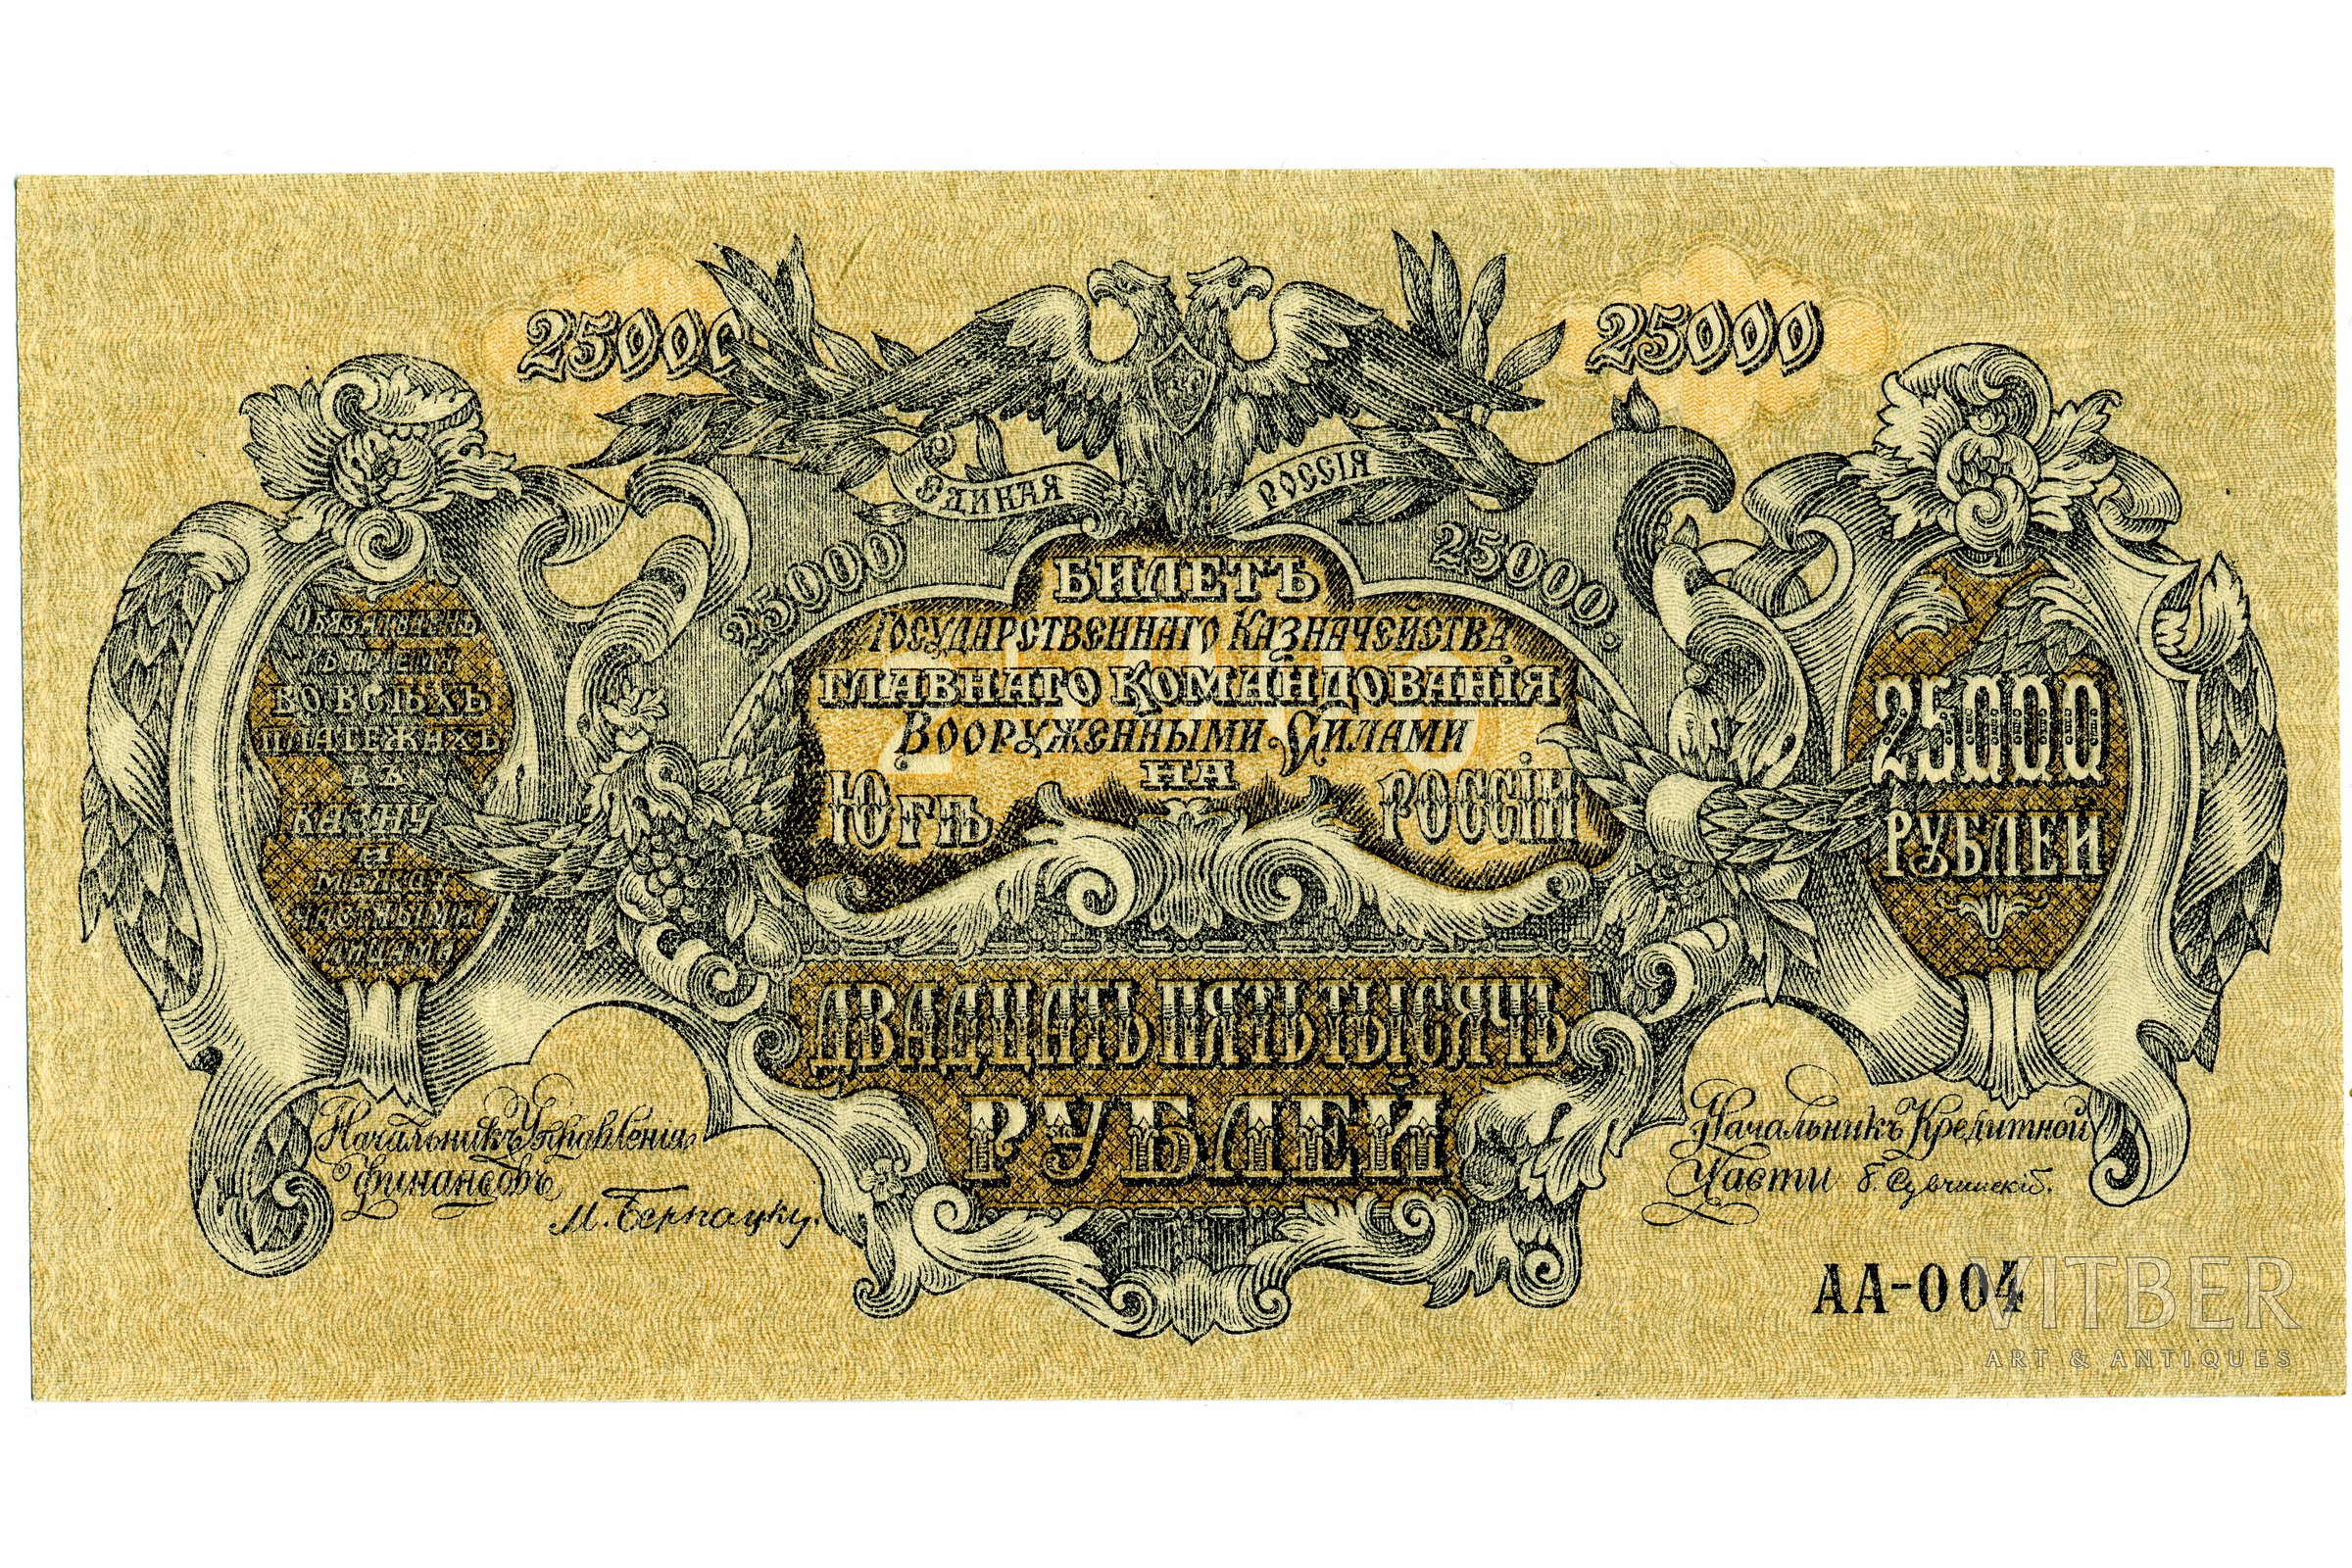 25000 рублей россии в доллары